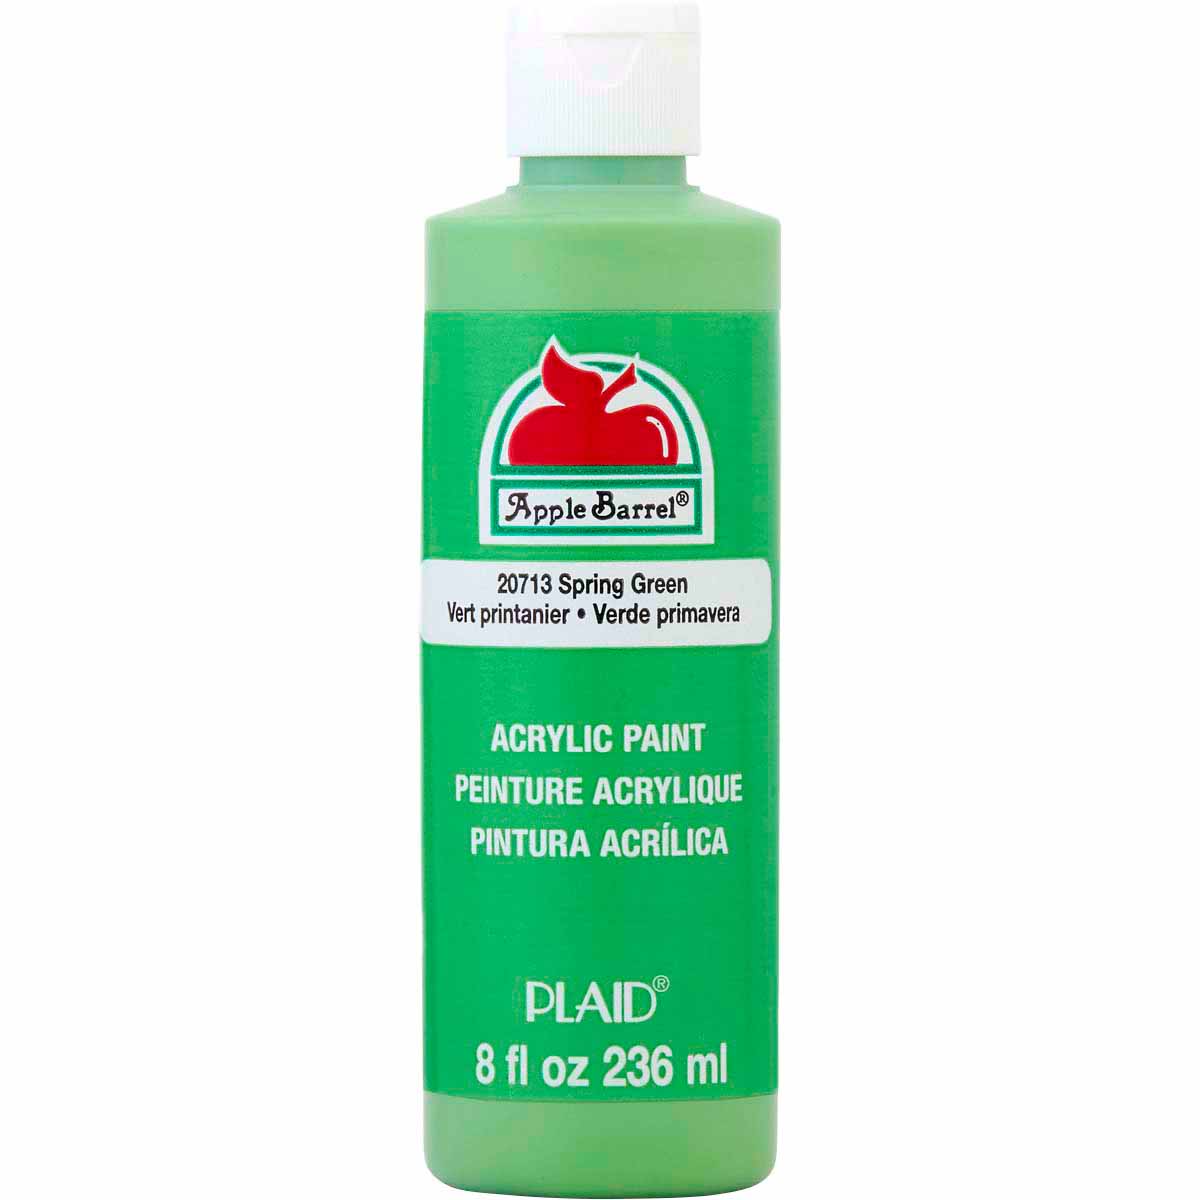 Apple Barrel Gloss Paint, White - 8 fl oz bottle